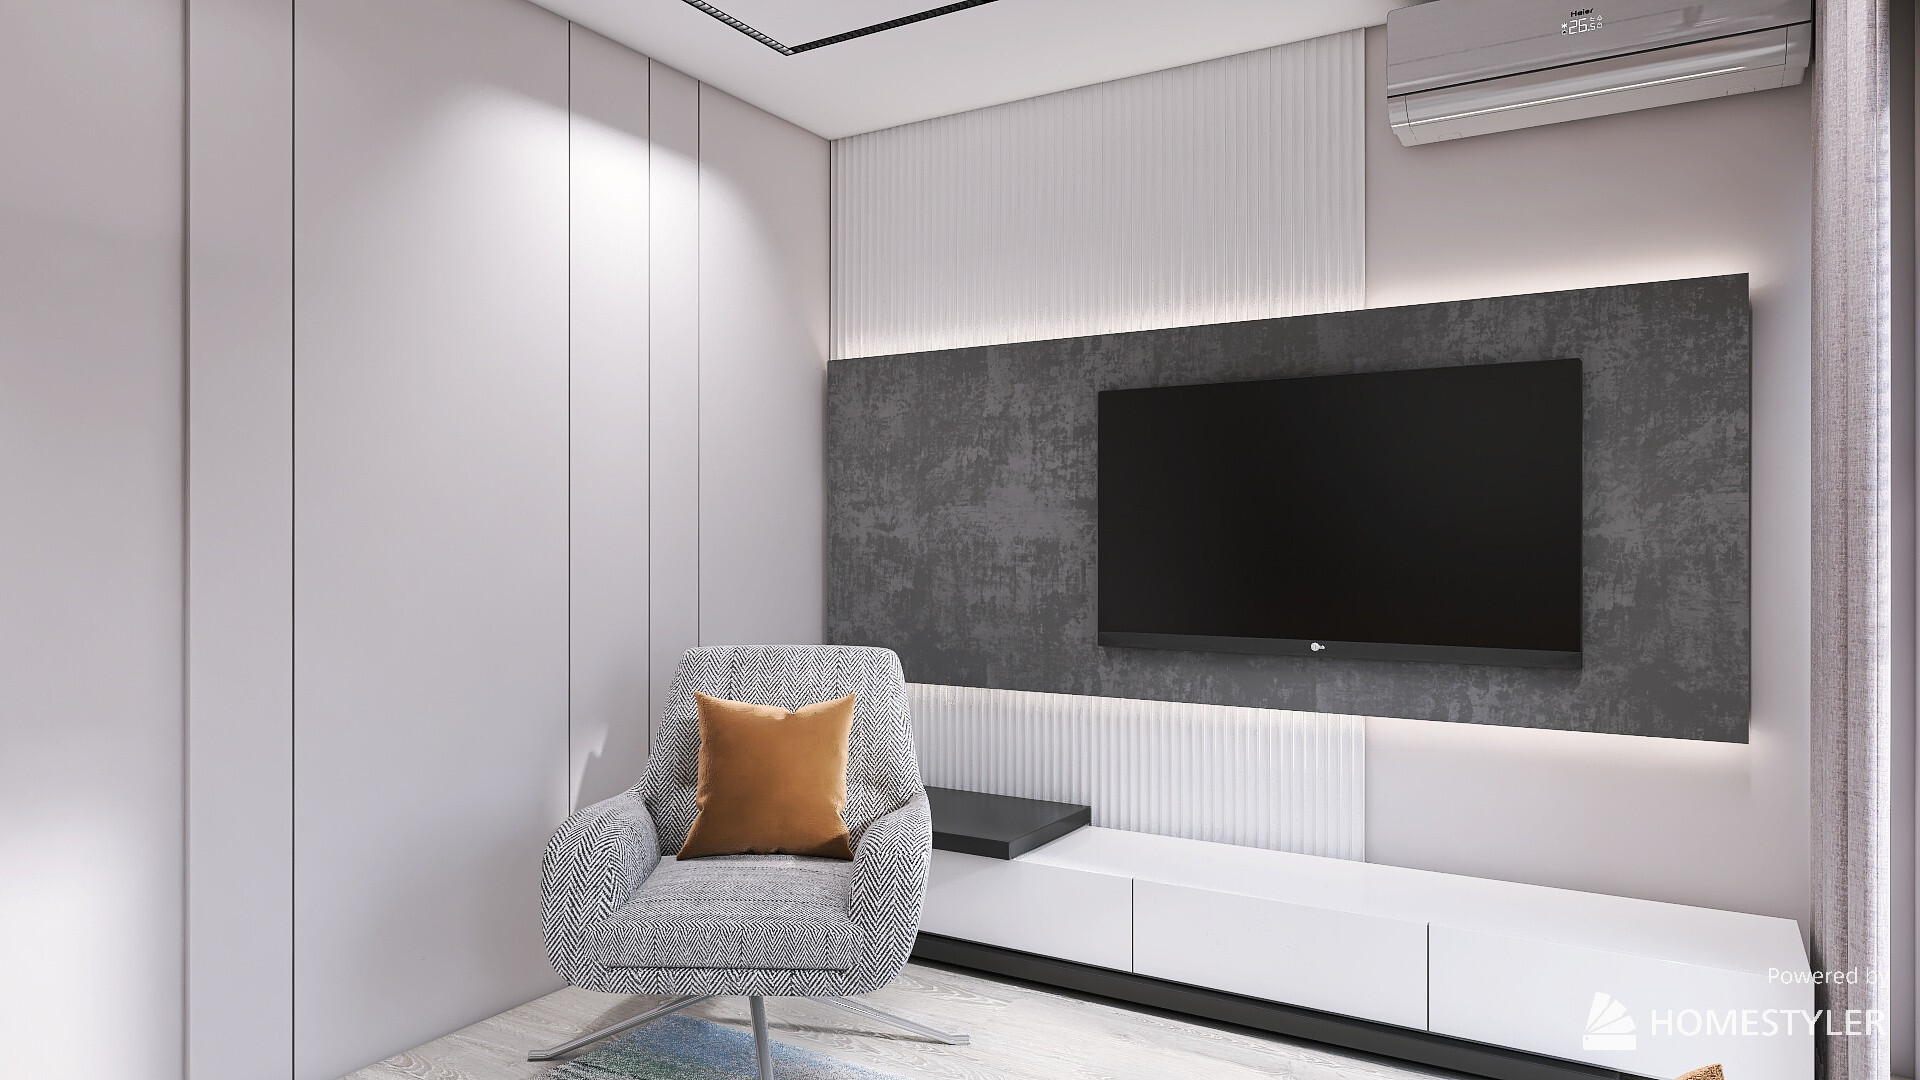 Интерьер гостиной cтеной с телевизором, телевизором на рейках, рейками с подсветкой, подсветкой настенной и подсветкой светодиодной в современном стиле